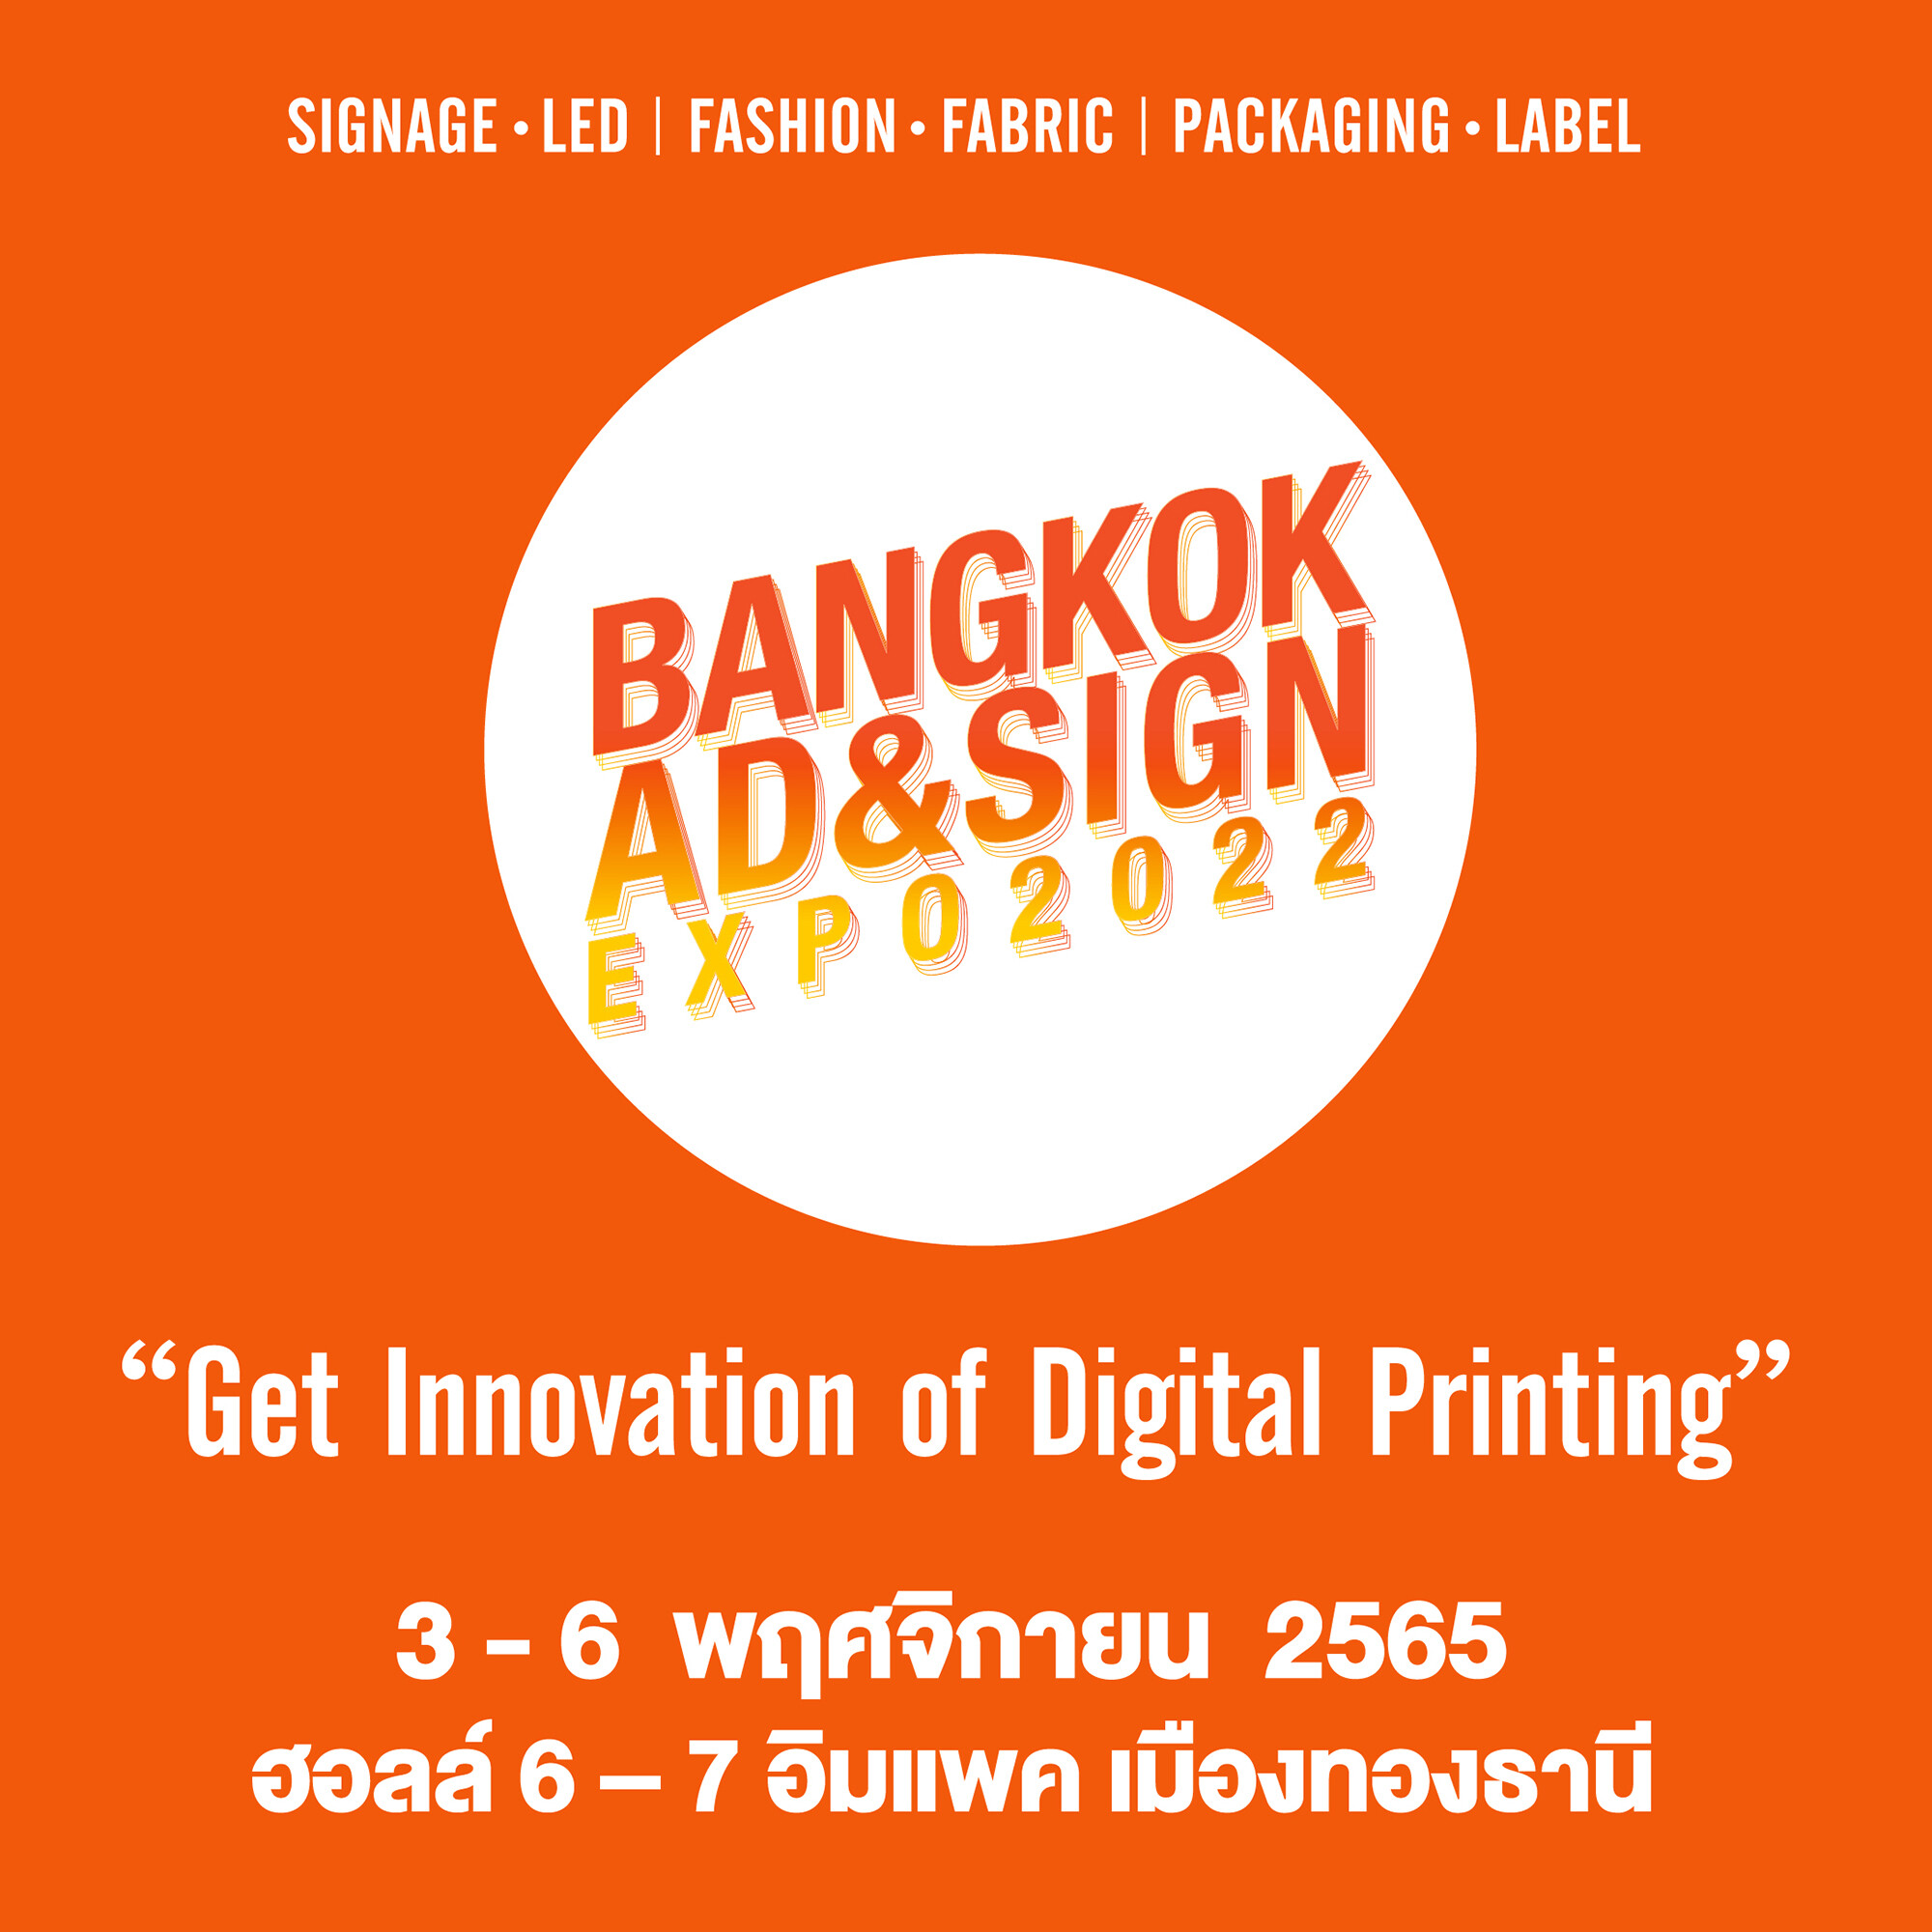 "BANGKOK AD &amp; SIGN EXPO 2022" งานใหญ่แห่งปี! ครบเครื่องเรื่องนวัตกรรมการผลิตงานป้าย สื่อโฆษณา และดิจิทัลพริ้นท์ติ้ง 3-6 พฤศจิกายนนี้ ที่อิมแพ็ค เมืองทองธานี